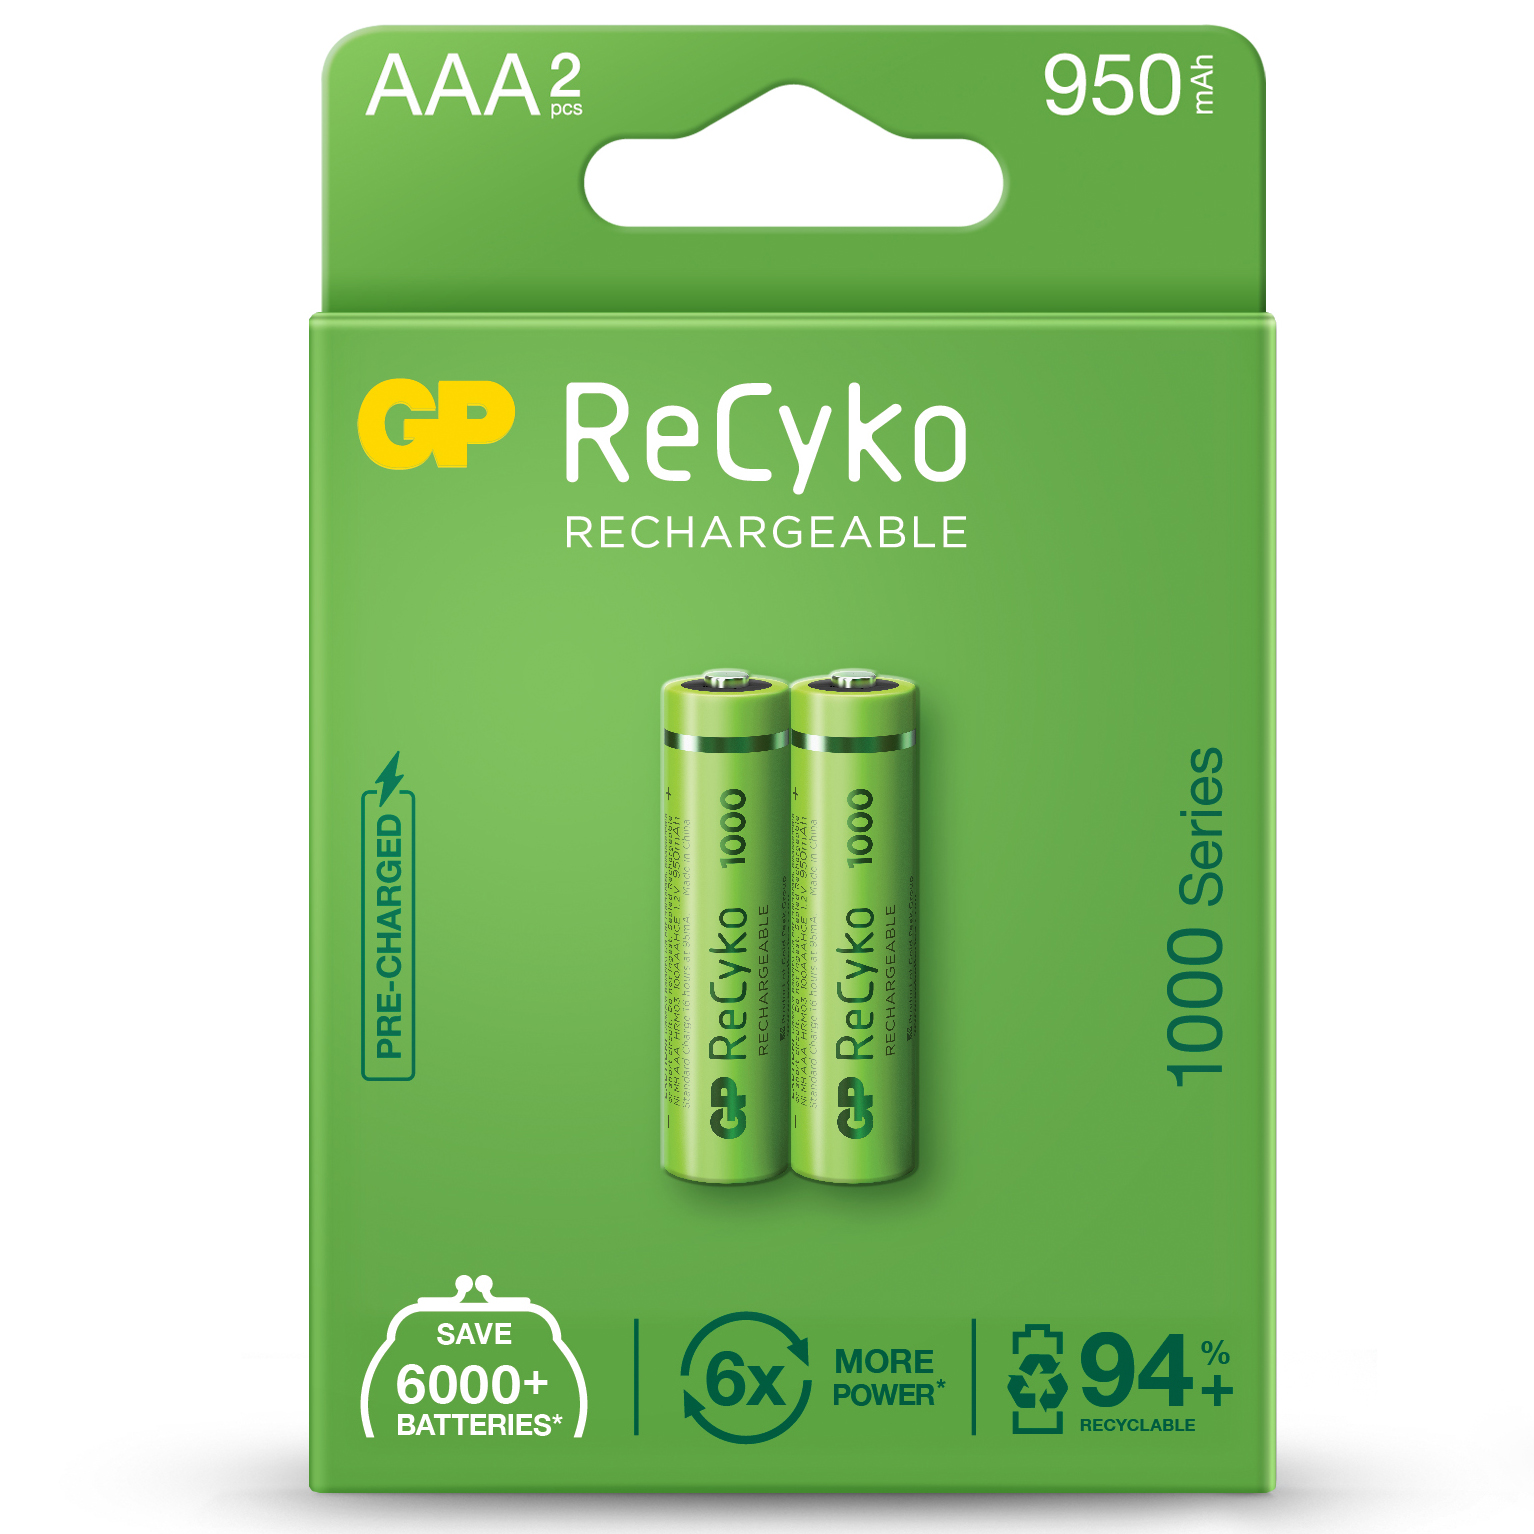 AAA, LR03 RECYKO recarregable 950mAh - Blister 2und.